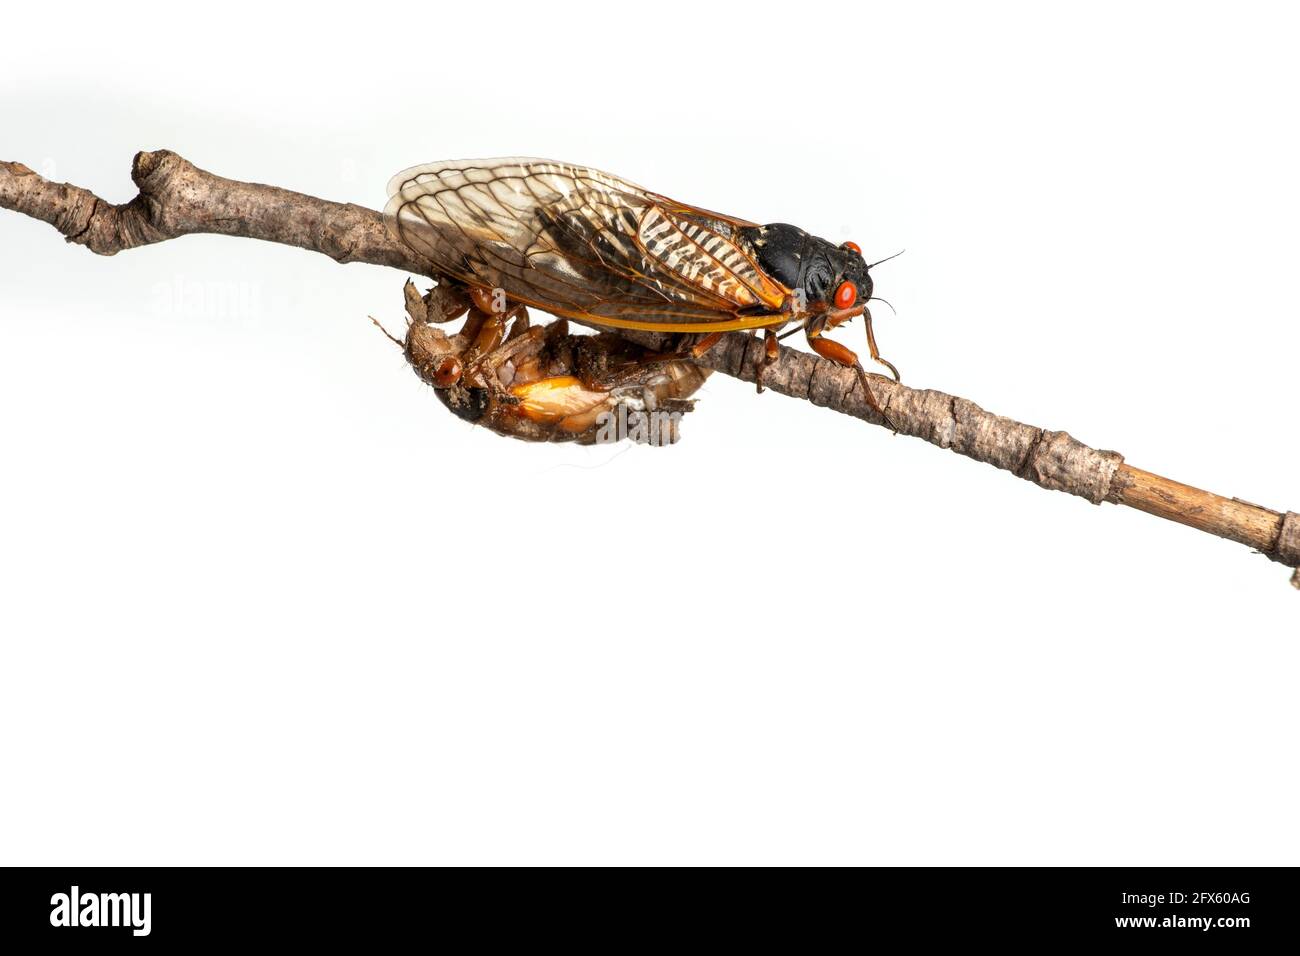 Brood X 17 ans adulte périodique cicada et une nymphe on branche isolée sur fond blanc Banque D'Images